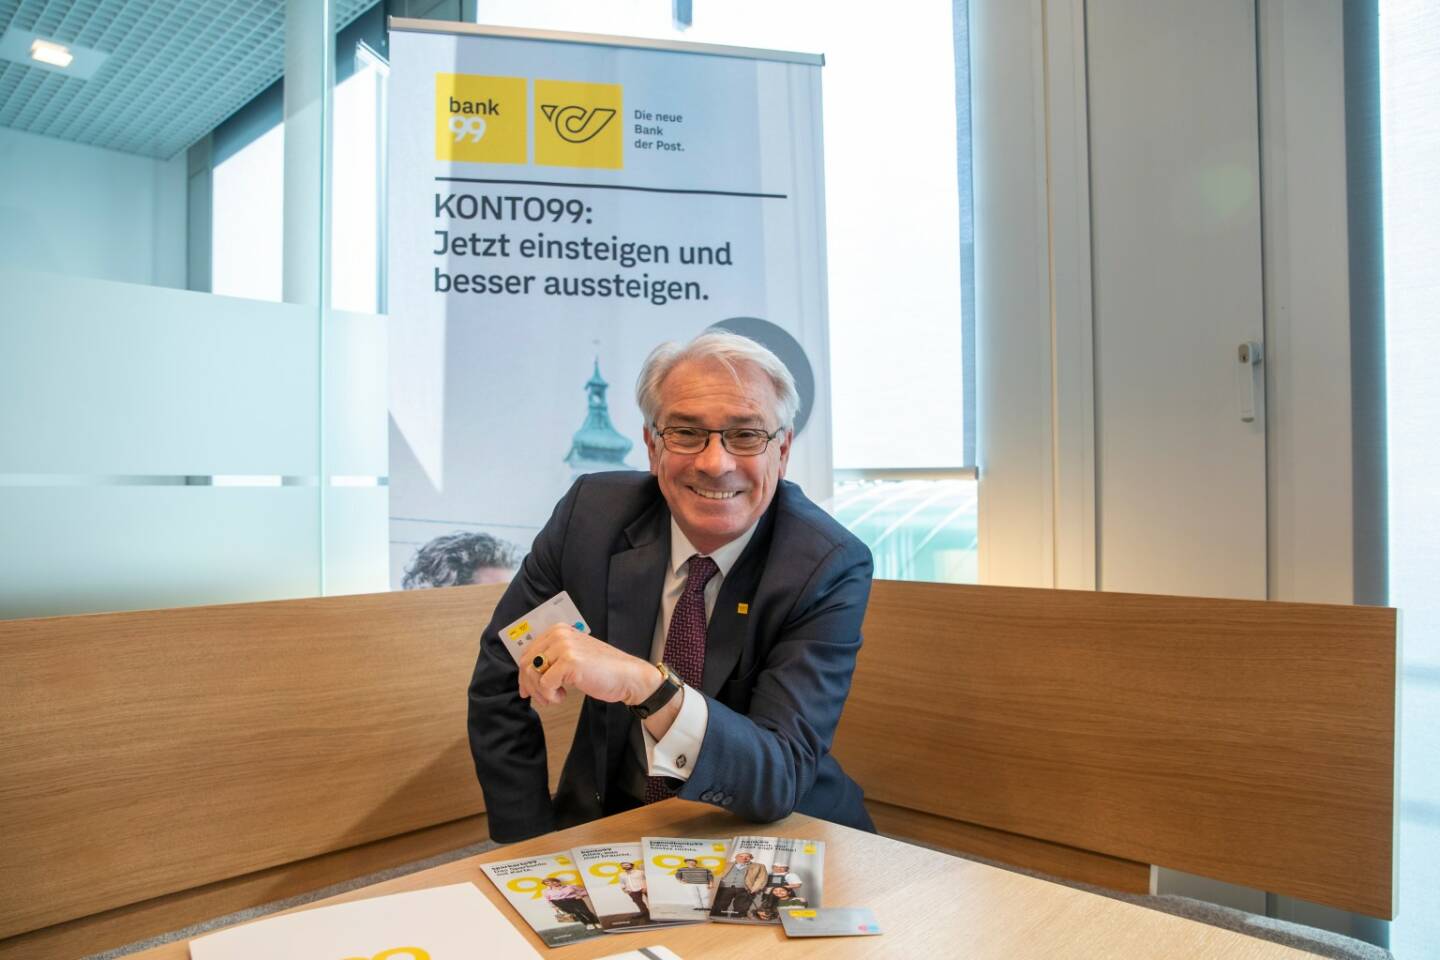 Post: Generaldirektor Georg Pölzl zum Start der bank99, Credit: GEPA pictures/ Philipp Brem